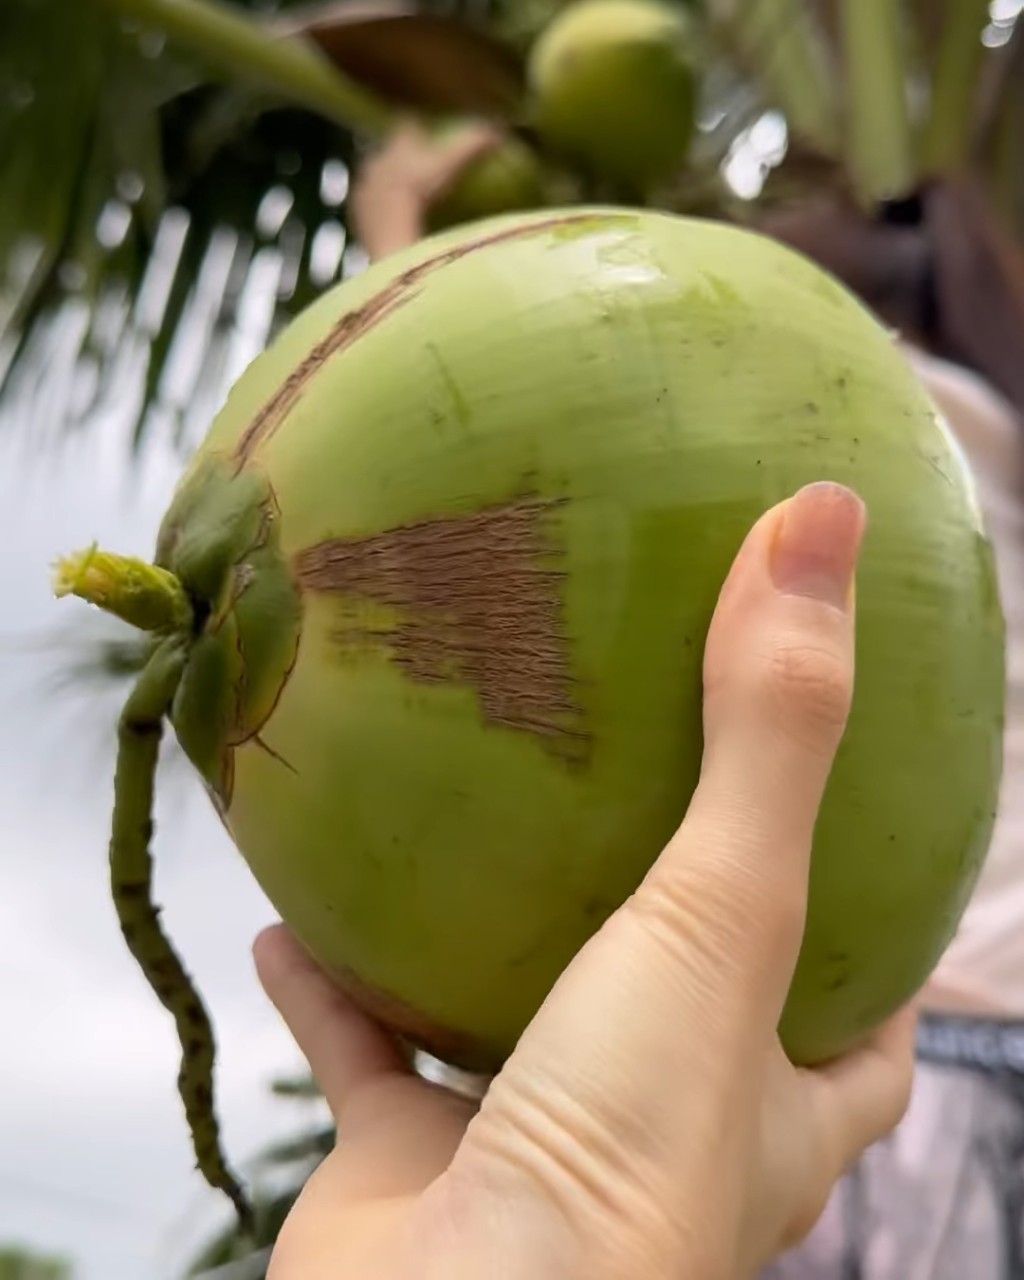 林明祯接过妈妈摘下的椰子，兴奋地说：“哗！新鲜的椰子水！”